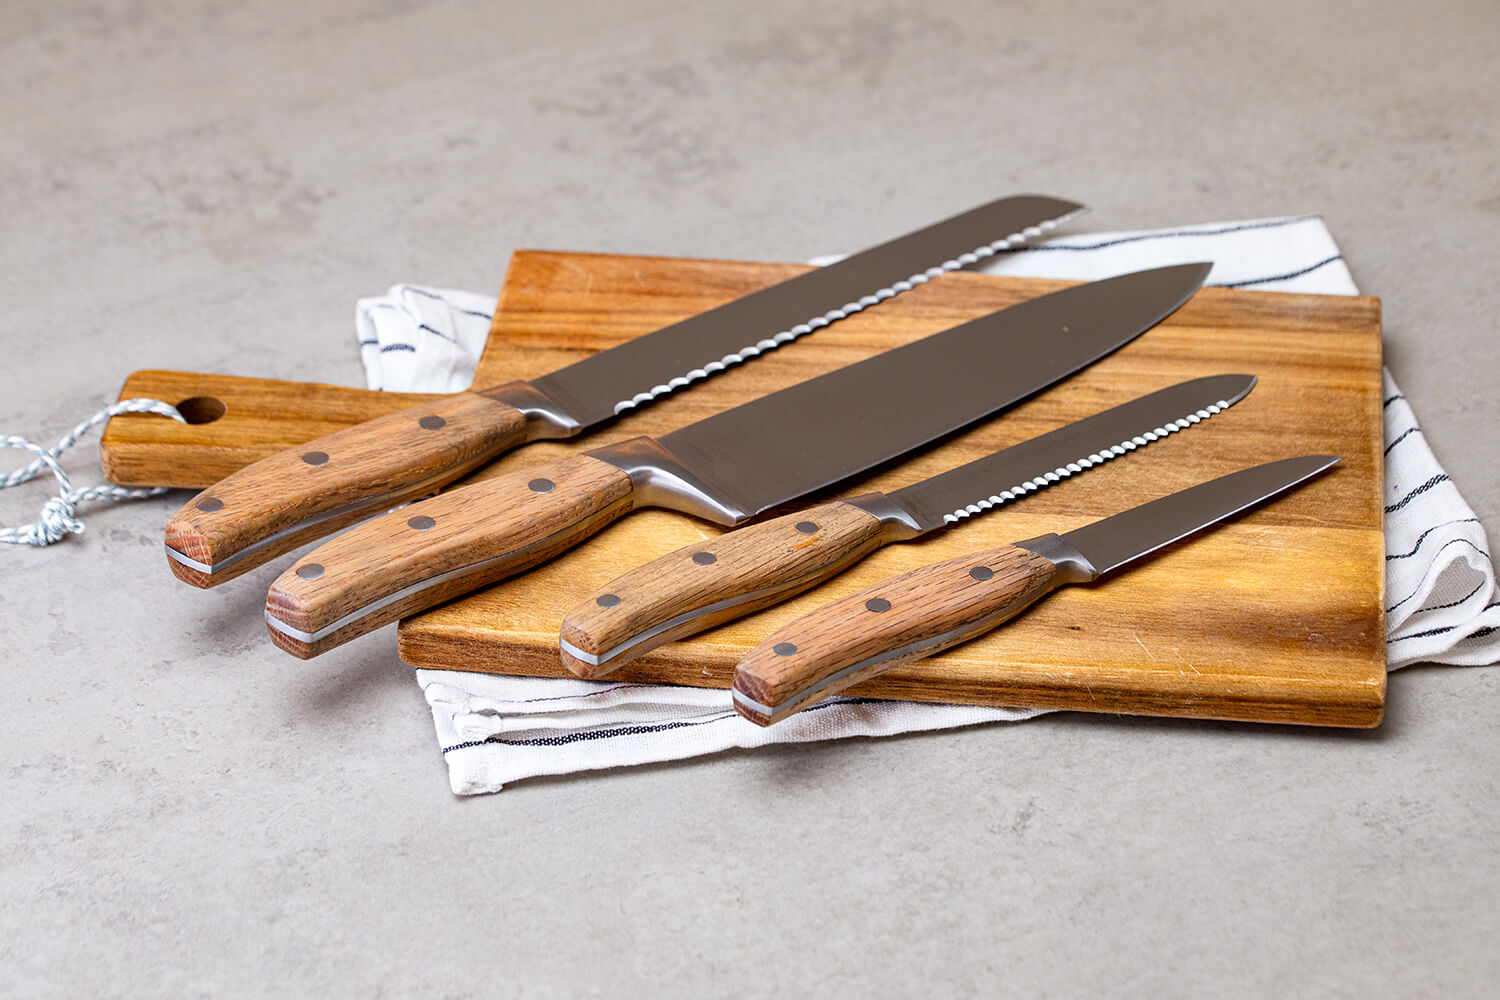 Verschiedene Messer auf einem Küchenbrett